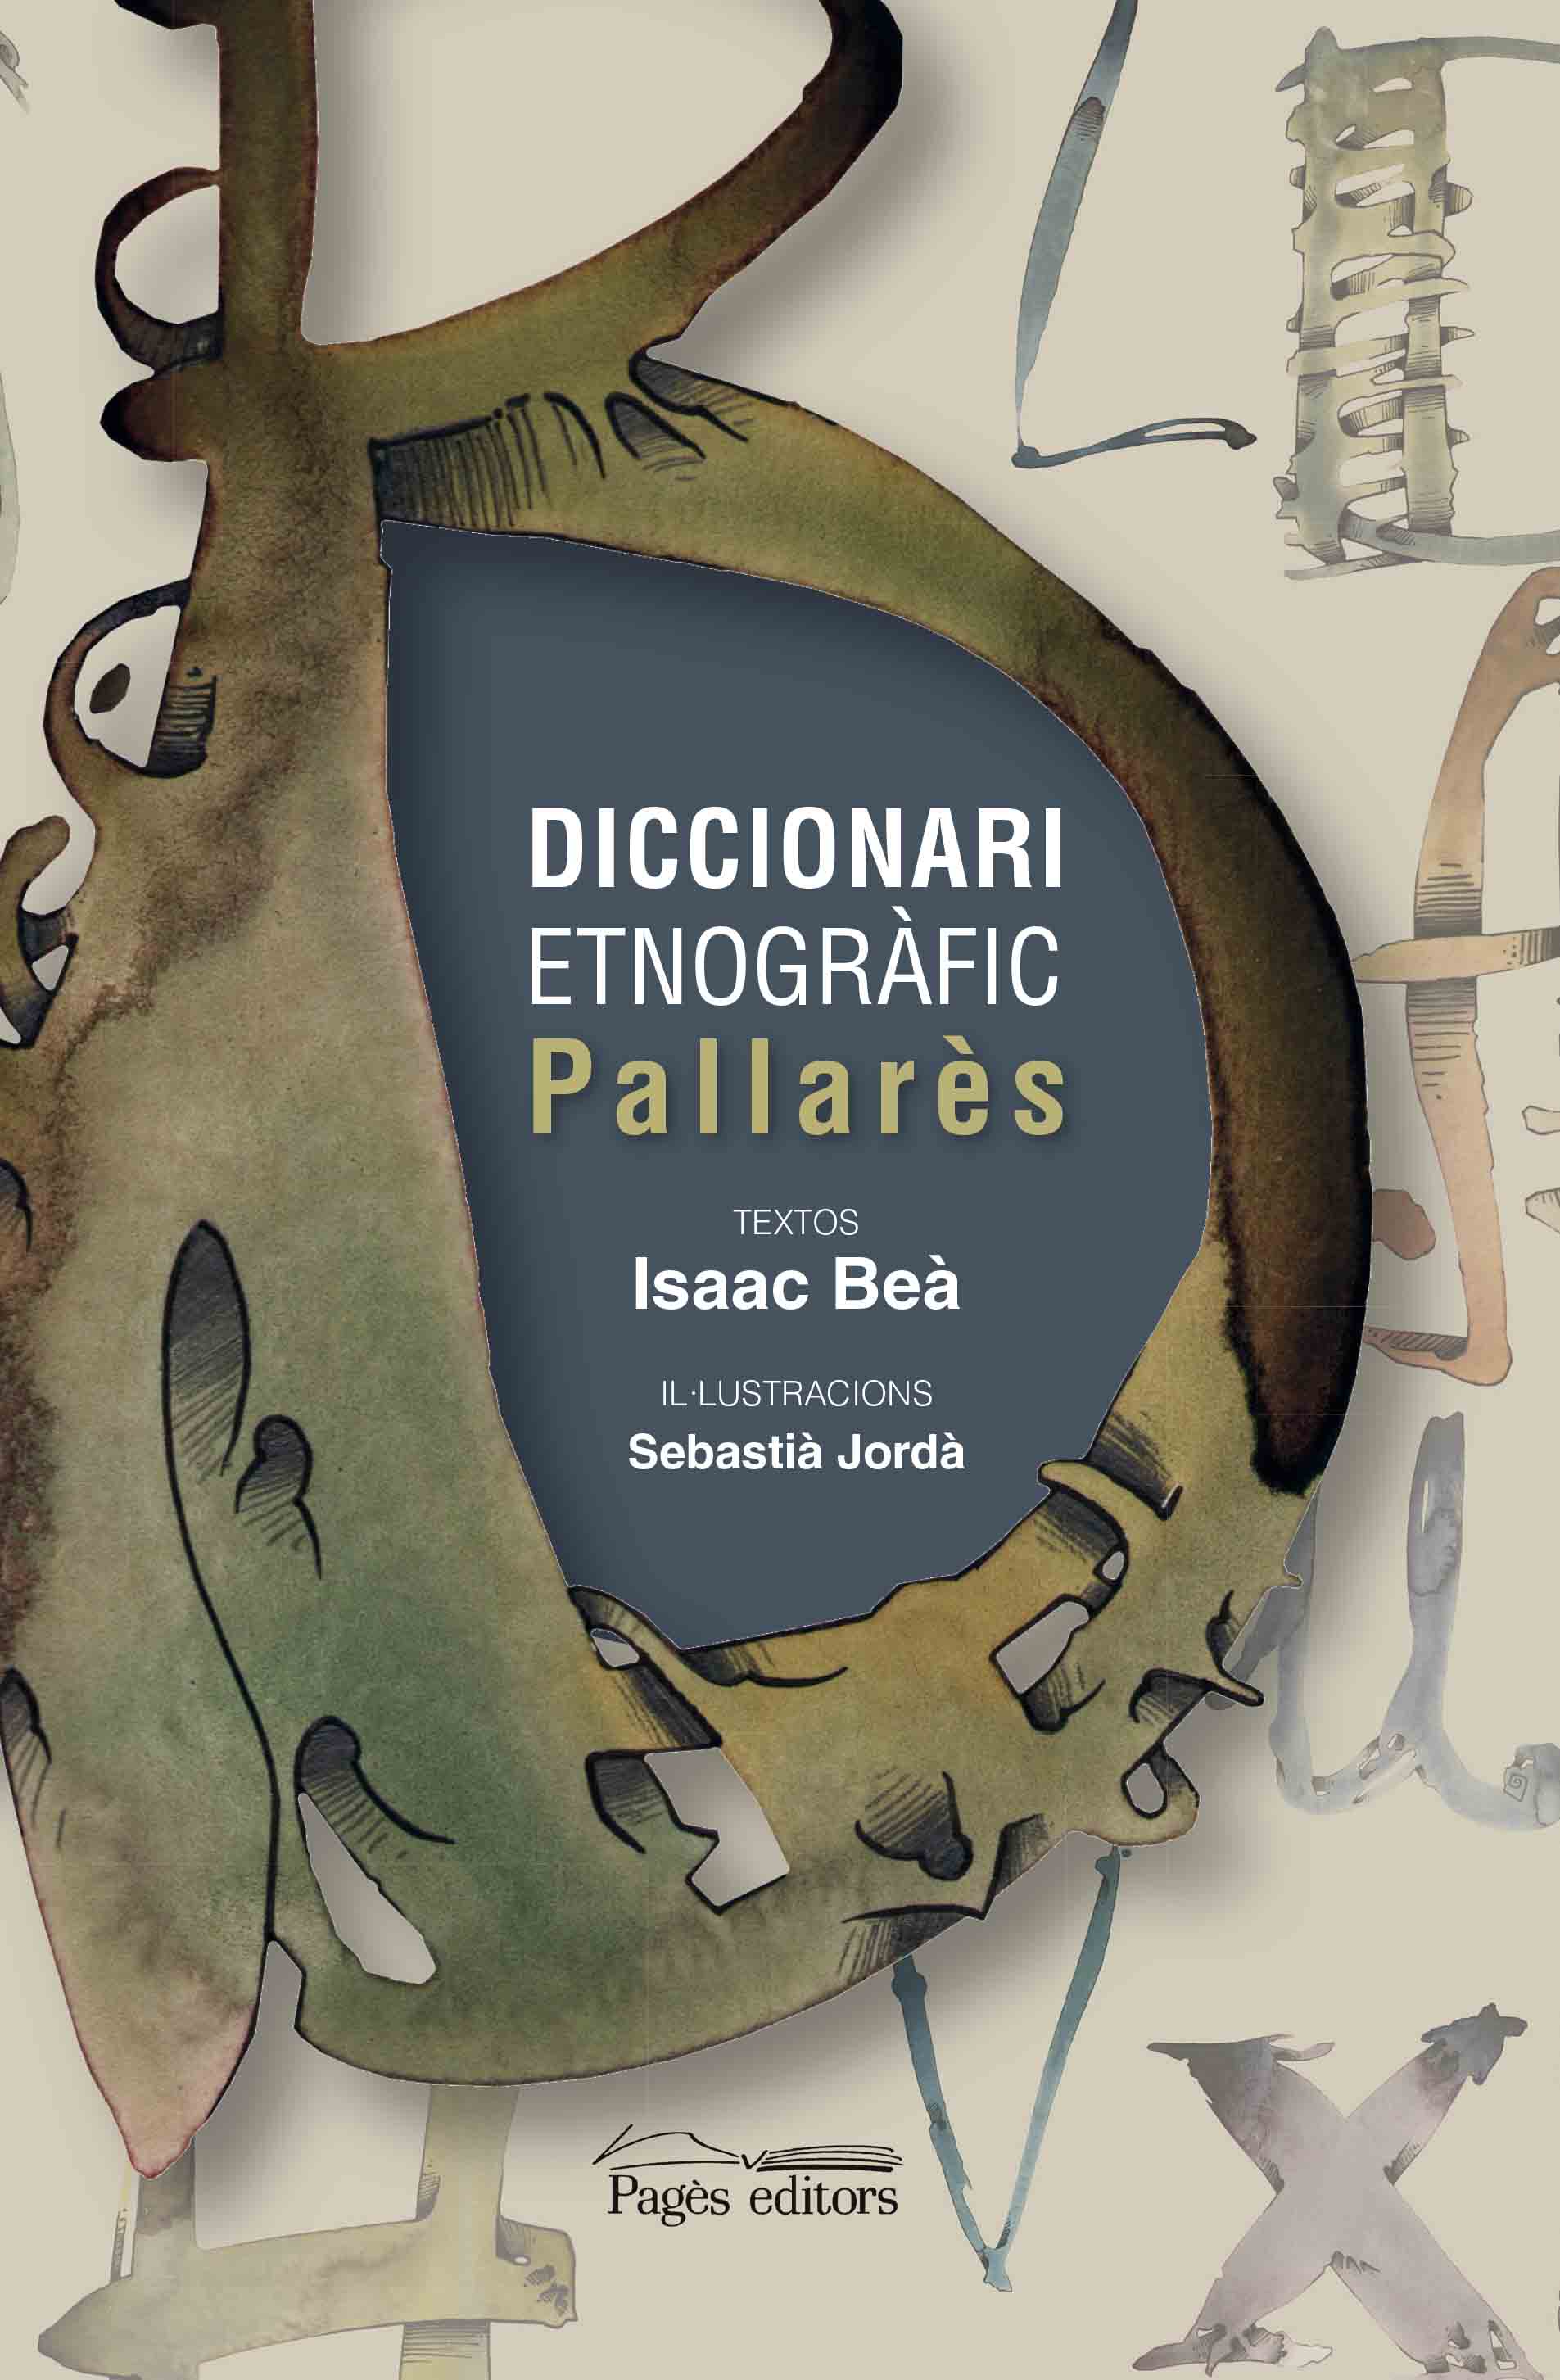 Pagès Editors publica el 'Diccionari etnogràfic Pallarès'